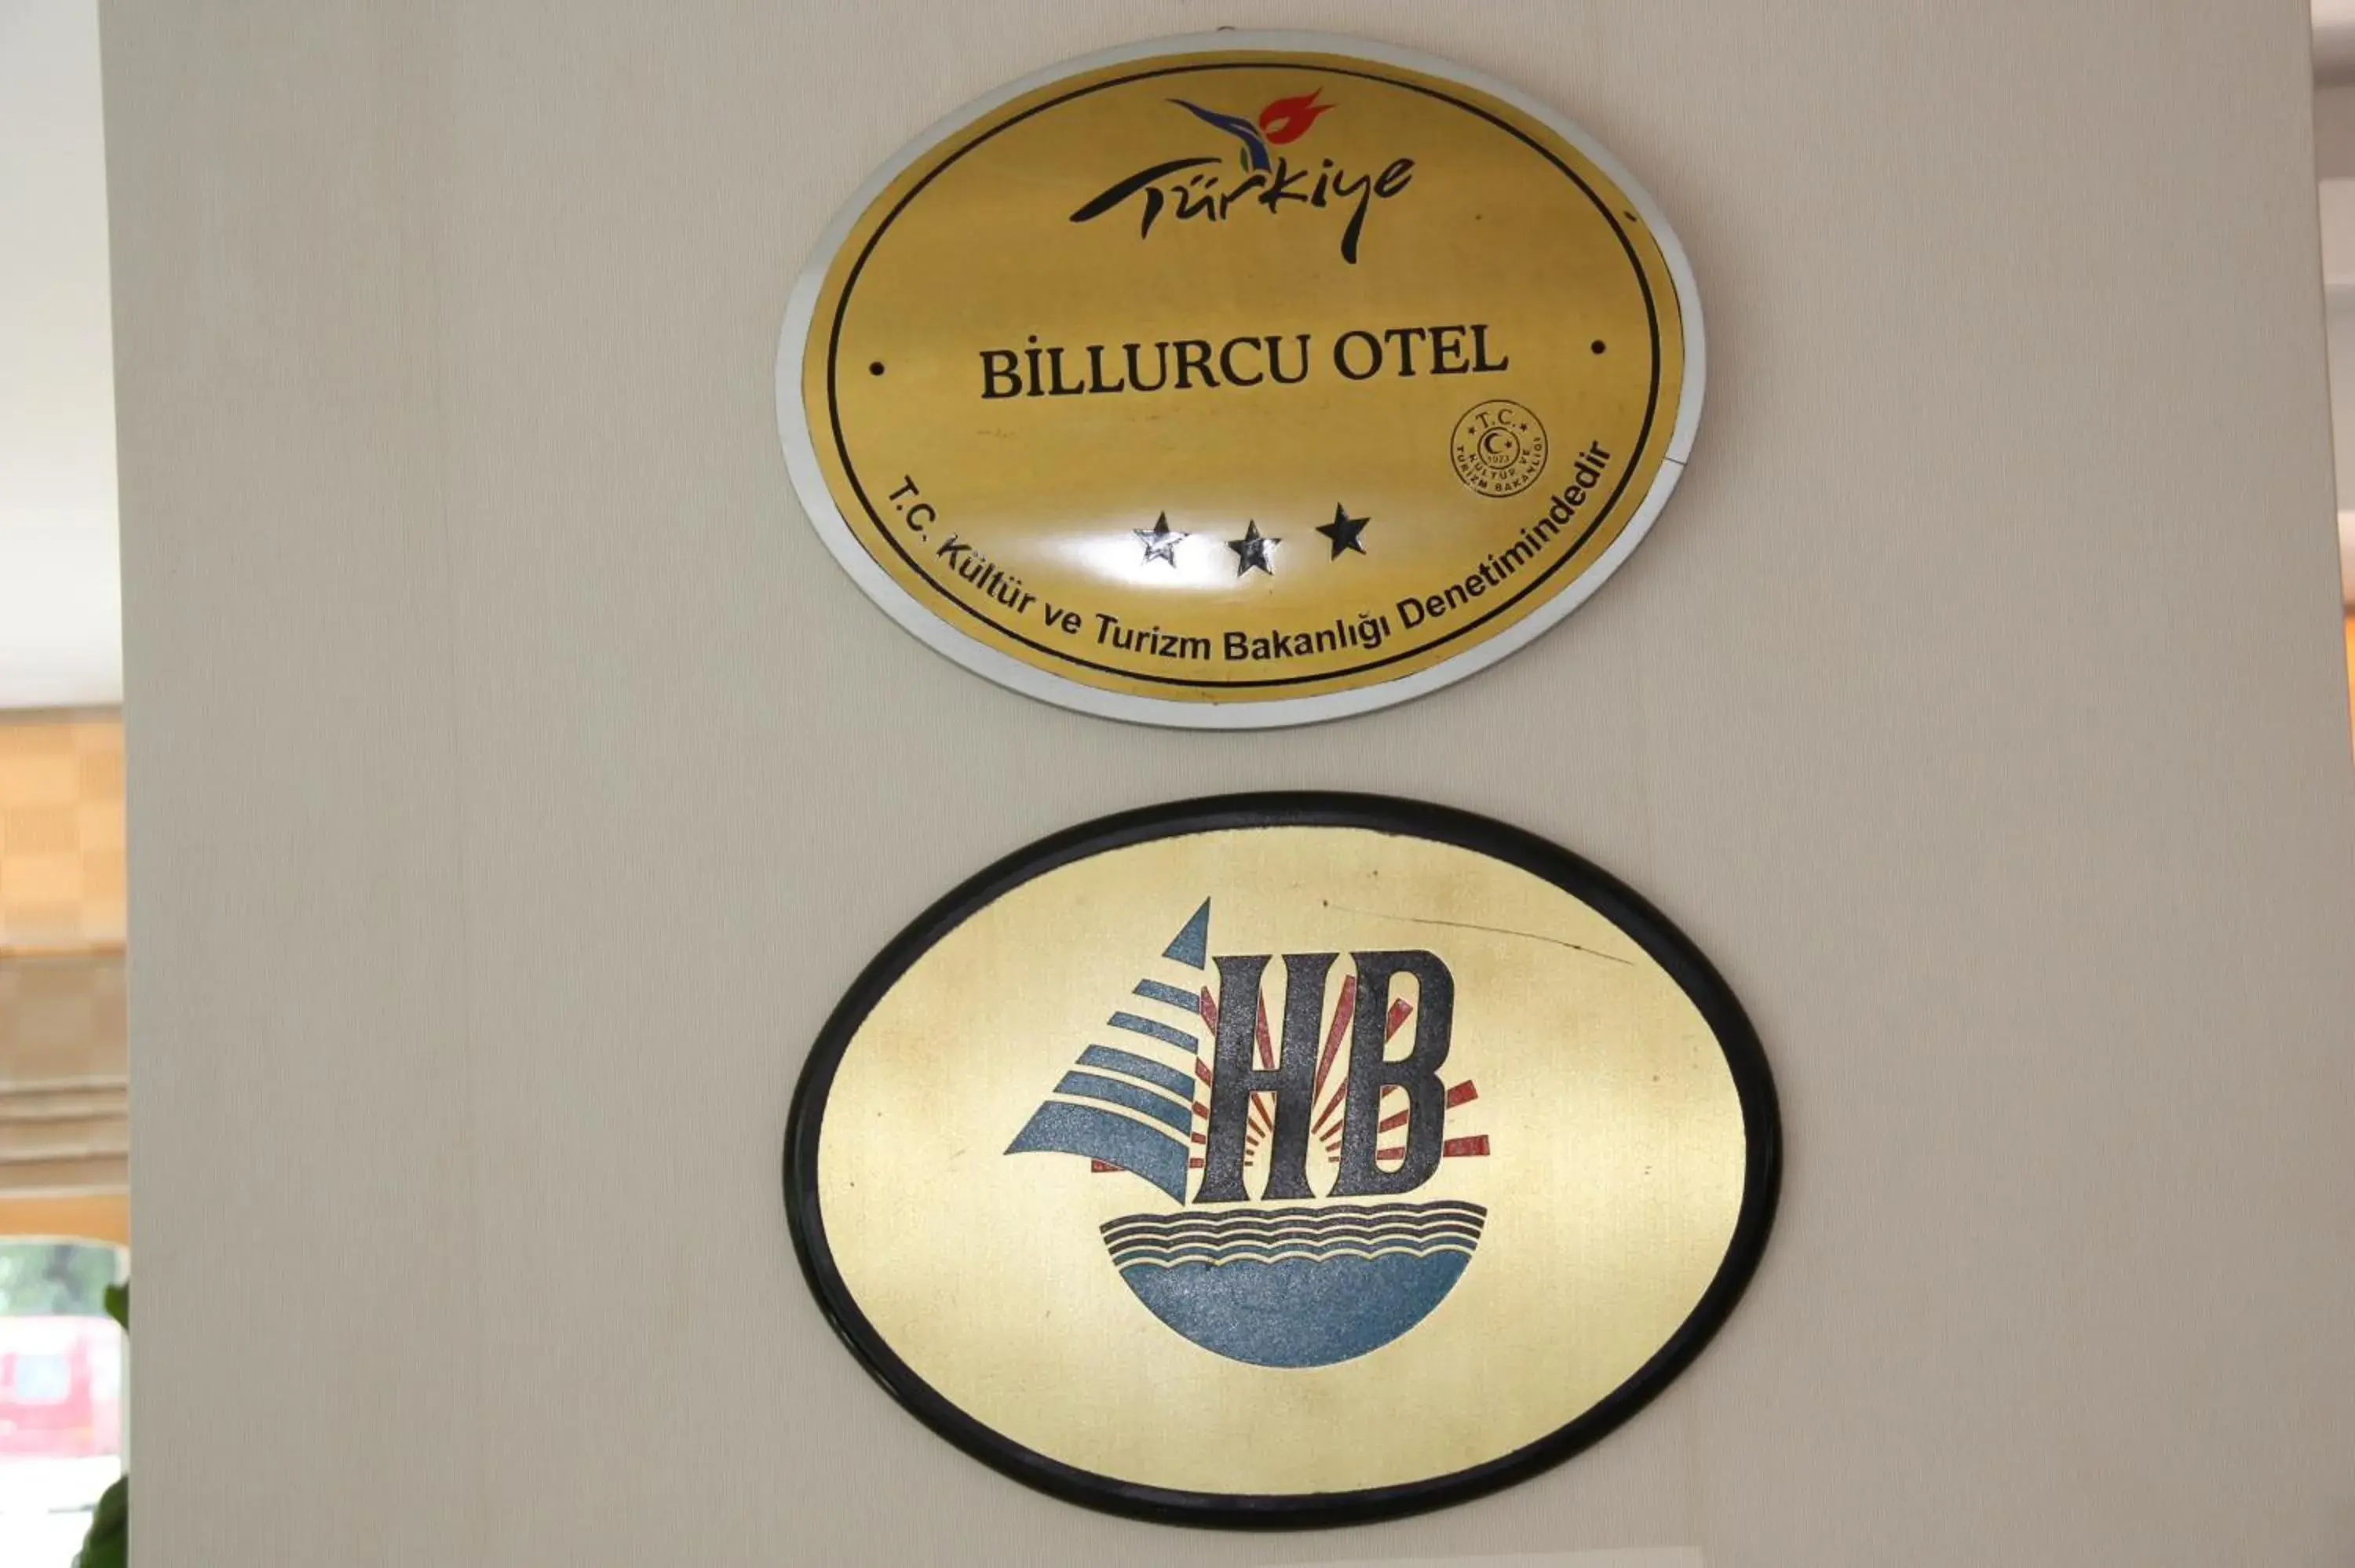 Property logo or sign, Logo/Certificate/Sign/Award in Hotel Billurcu